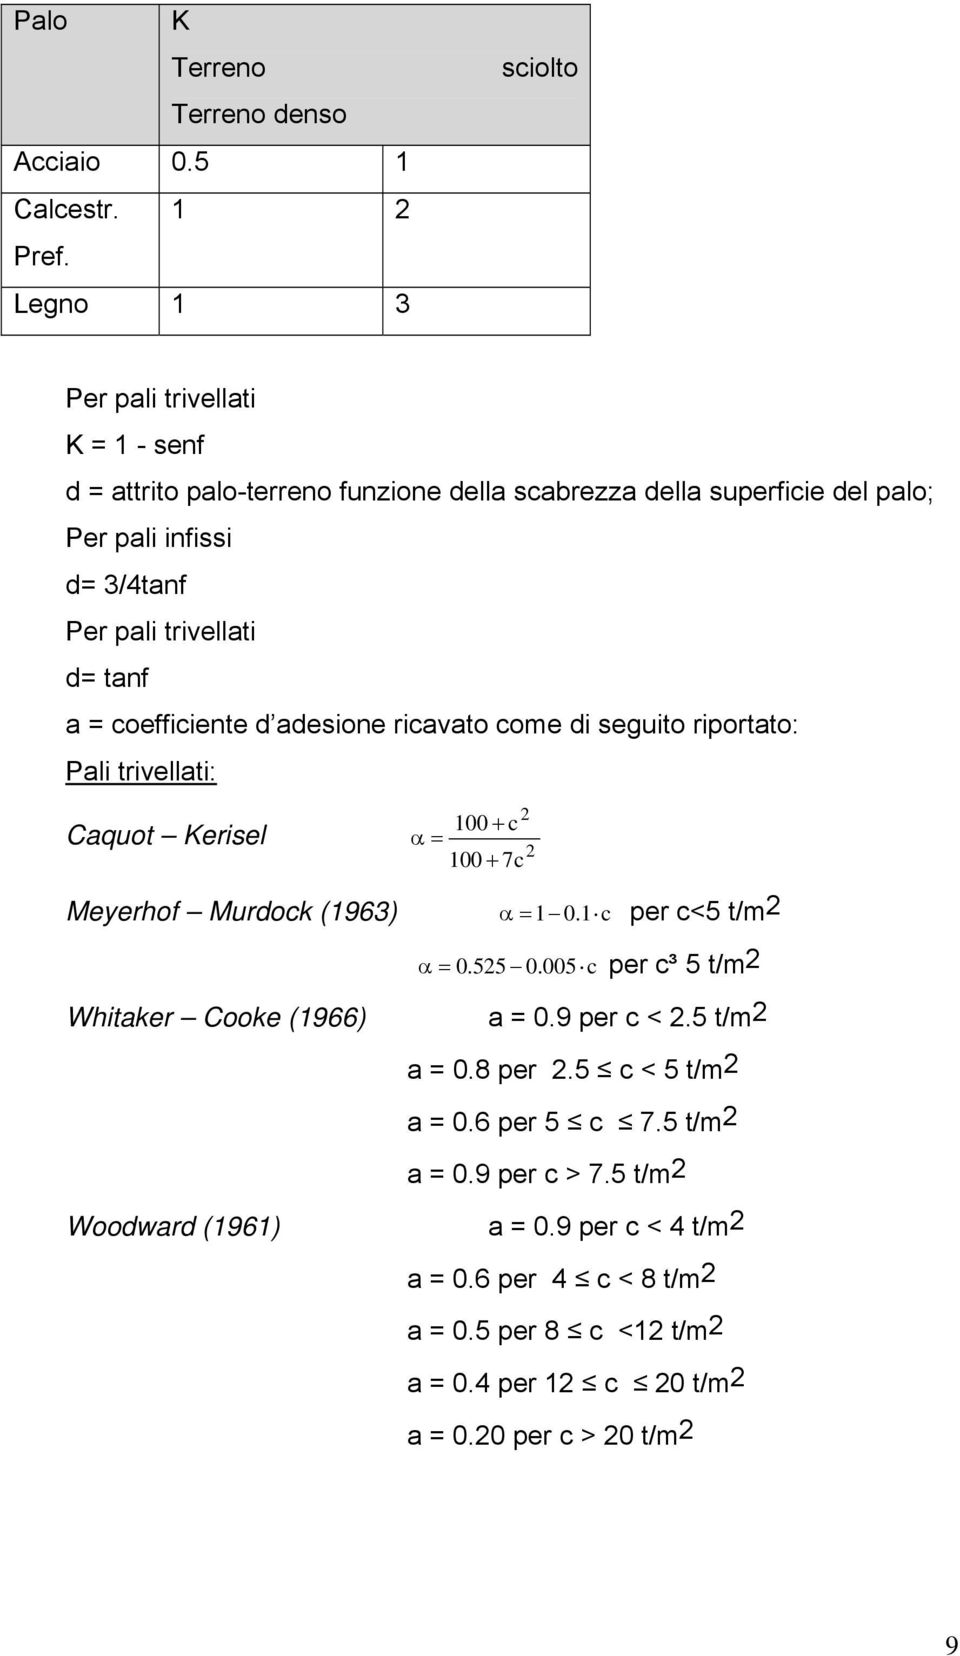 trivellati d= tanf a = coefficiente d adesione ricavato come di seguito riportato: Pali trivellati: 2 100 c Caquot Kerisel 2 100 7c Meyerhof Murdock (1963) 1 0.